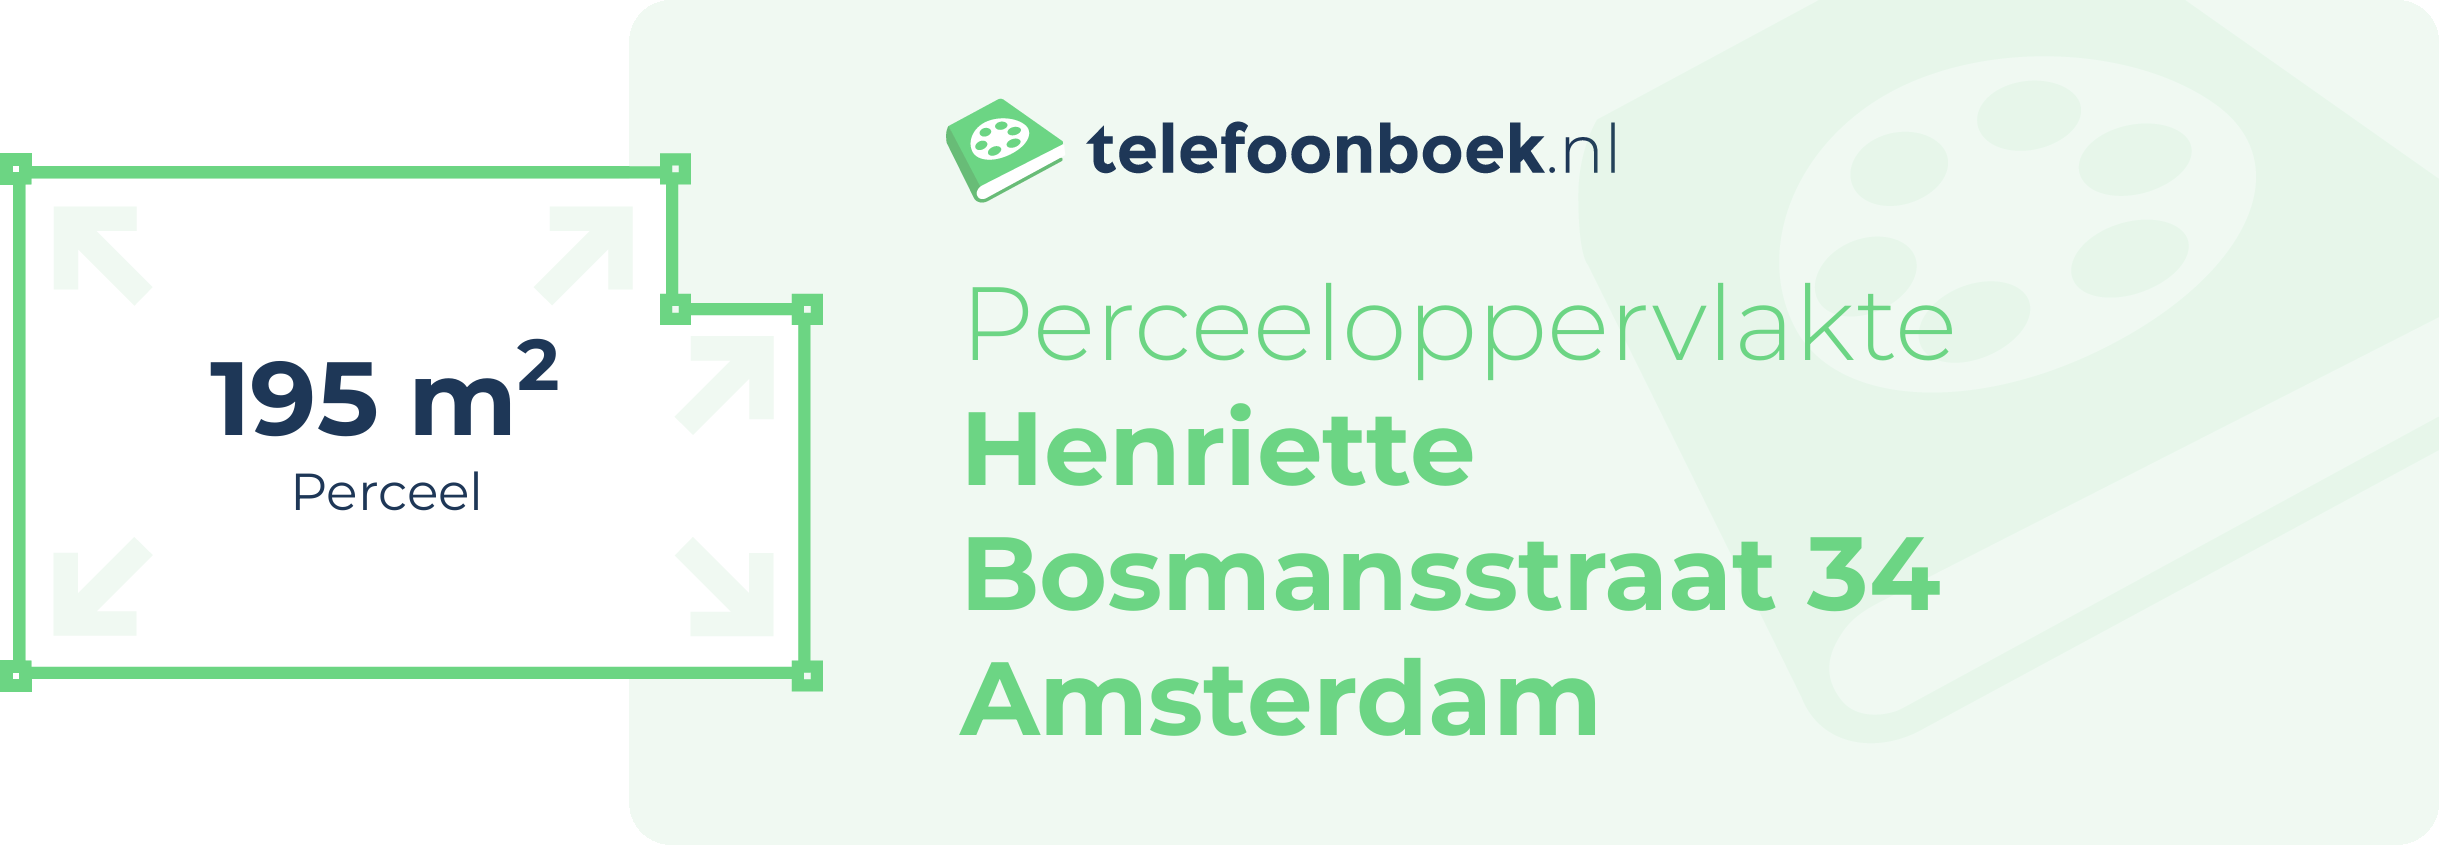 Perceeloppervlakte Henriette Bosmansstraat 34 Amsterdam